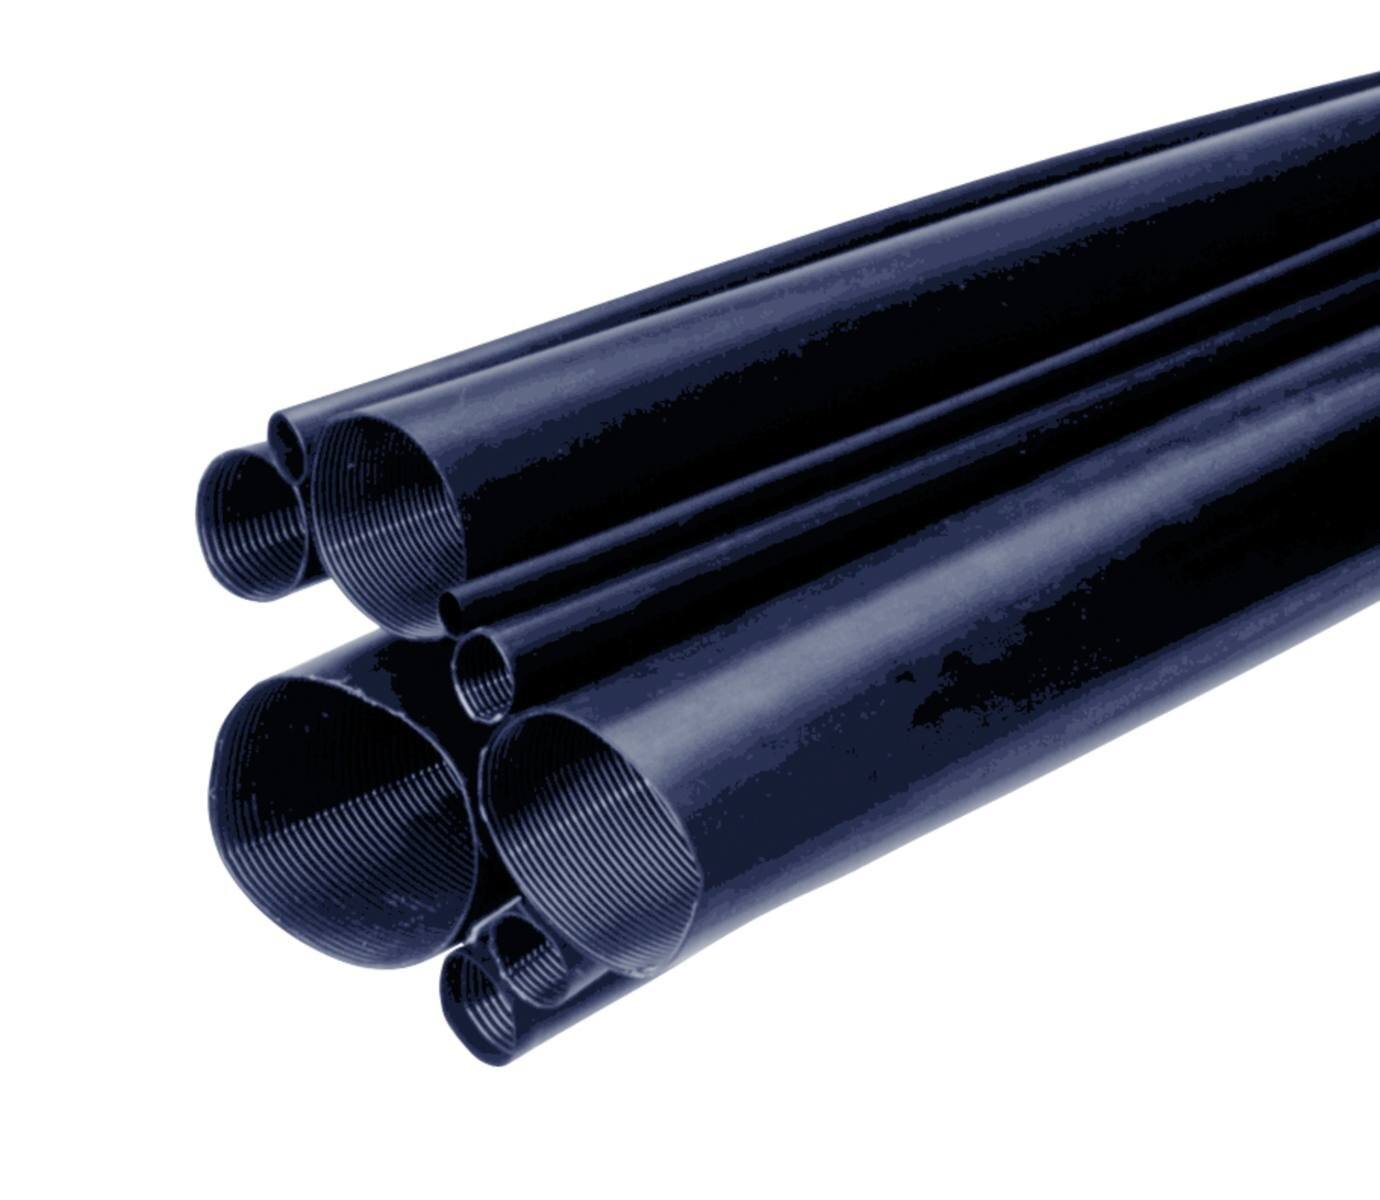 3M MDT-A Tubo termorretráctil de pared media con adhesivo, negro, 27/8 mm, 1 m